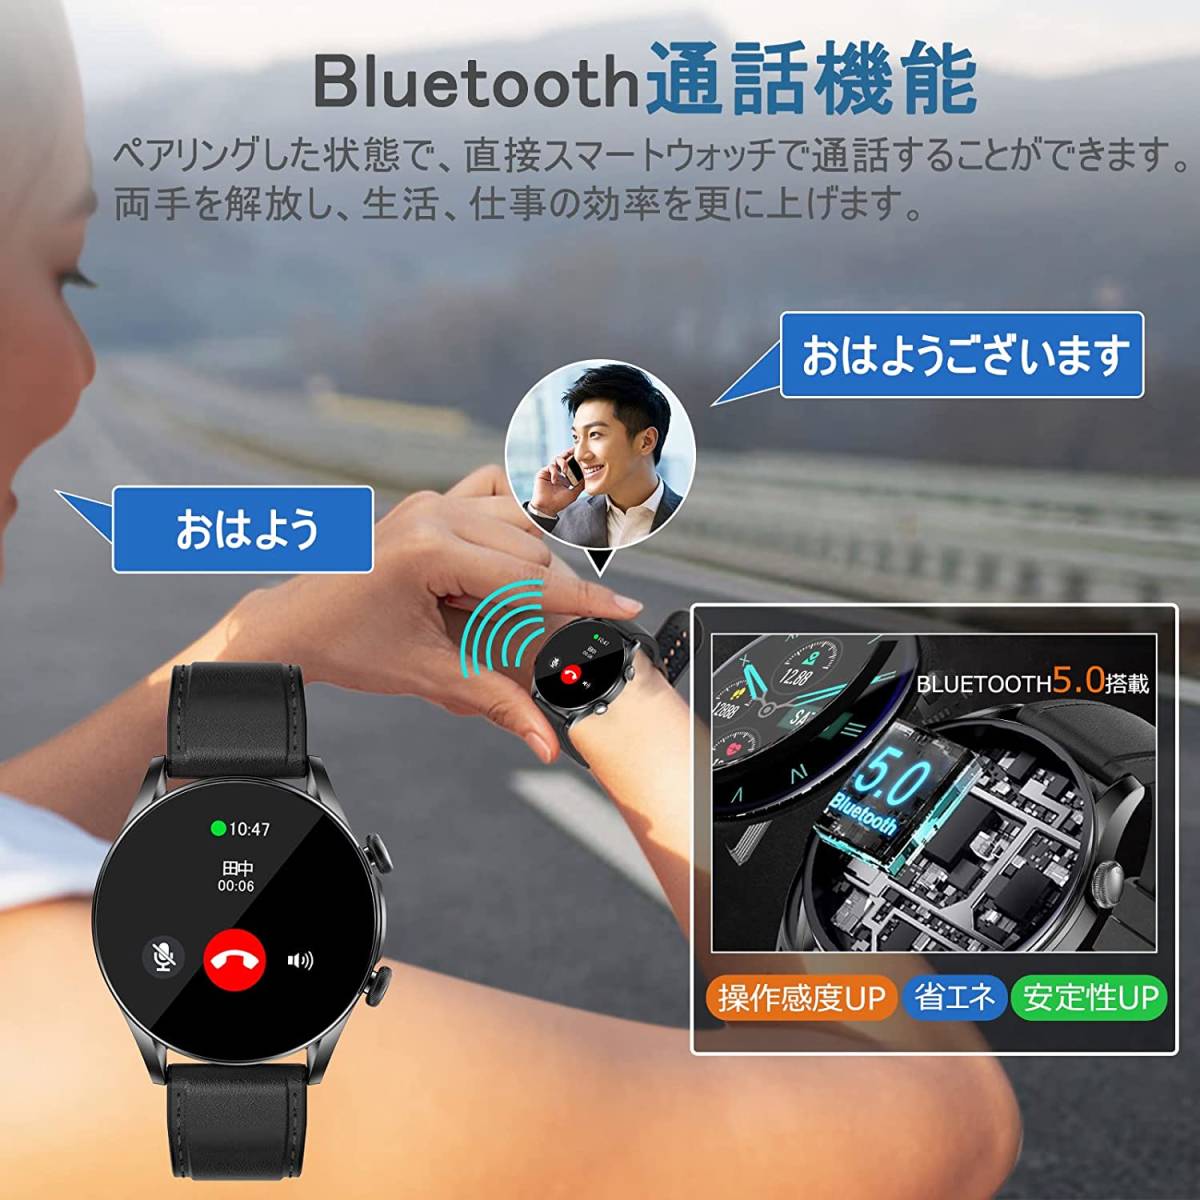 85 смарт-часы 2022 Bluetooth телефонный разговор наручные часы спорт часы деятельность количество итого 1.32 in 270mAh долговечный аккумулятор 30 день длина час . машина IP67 водонепроницаемый 